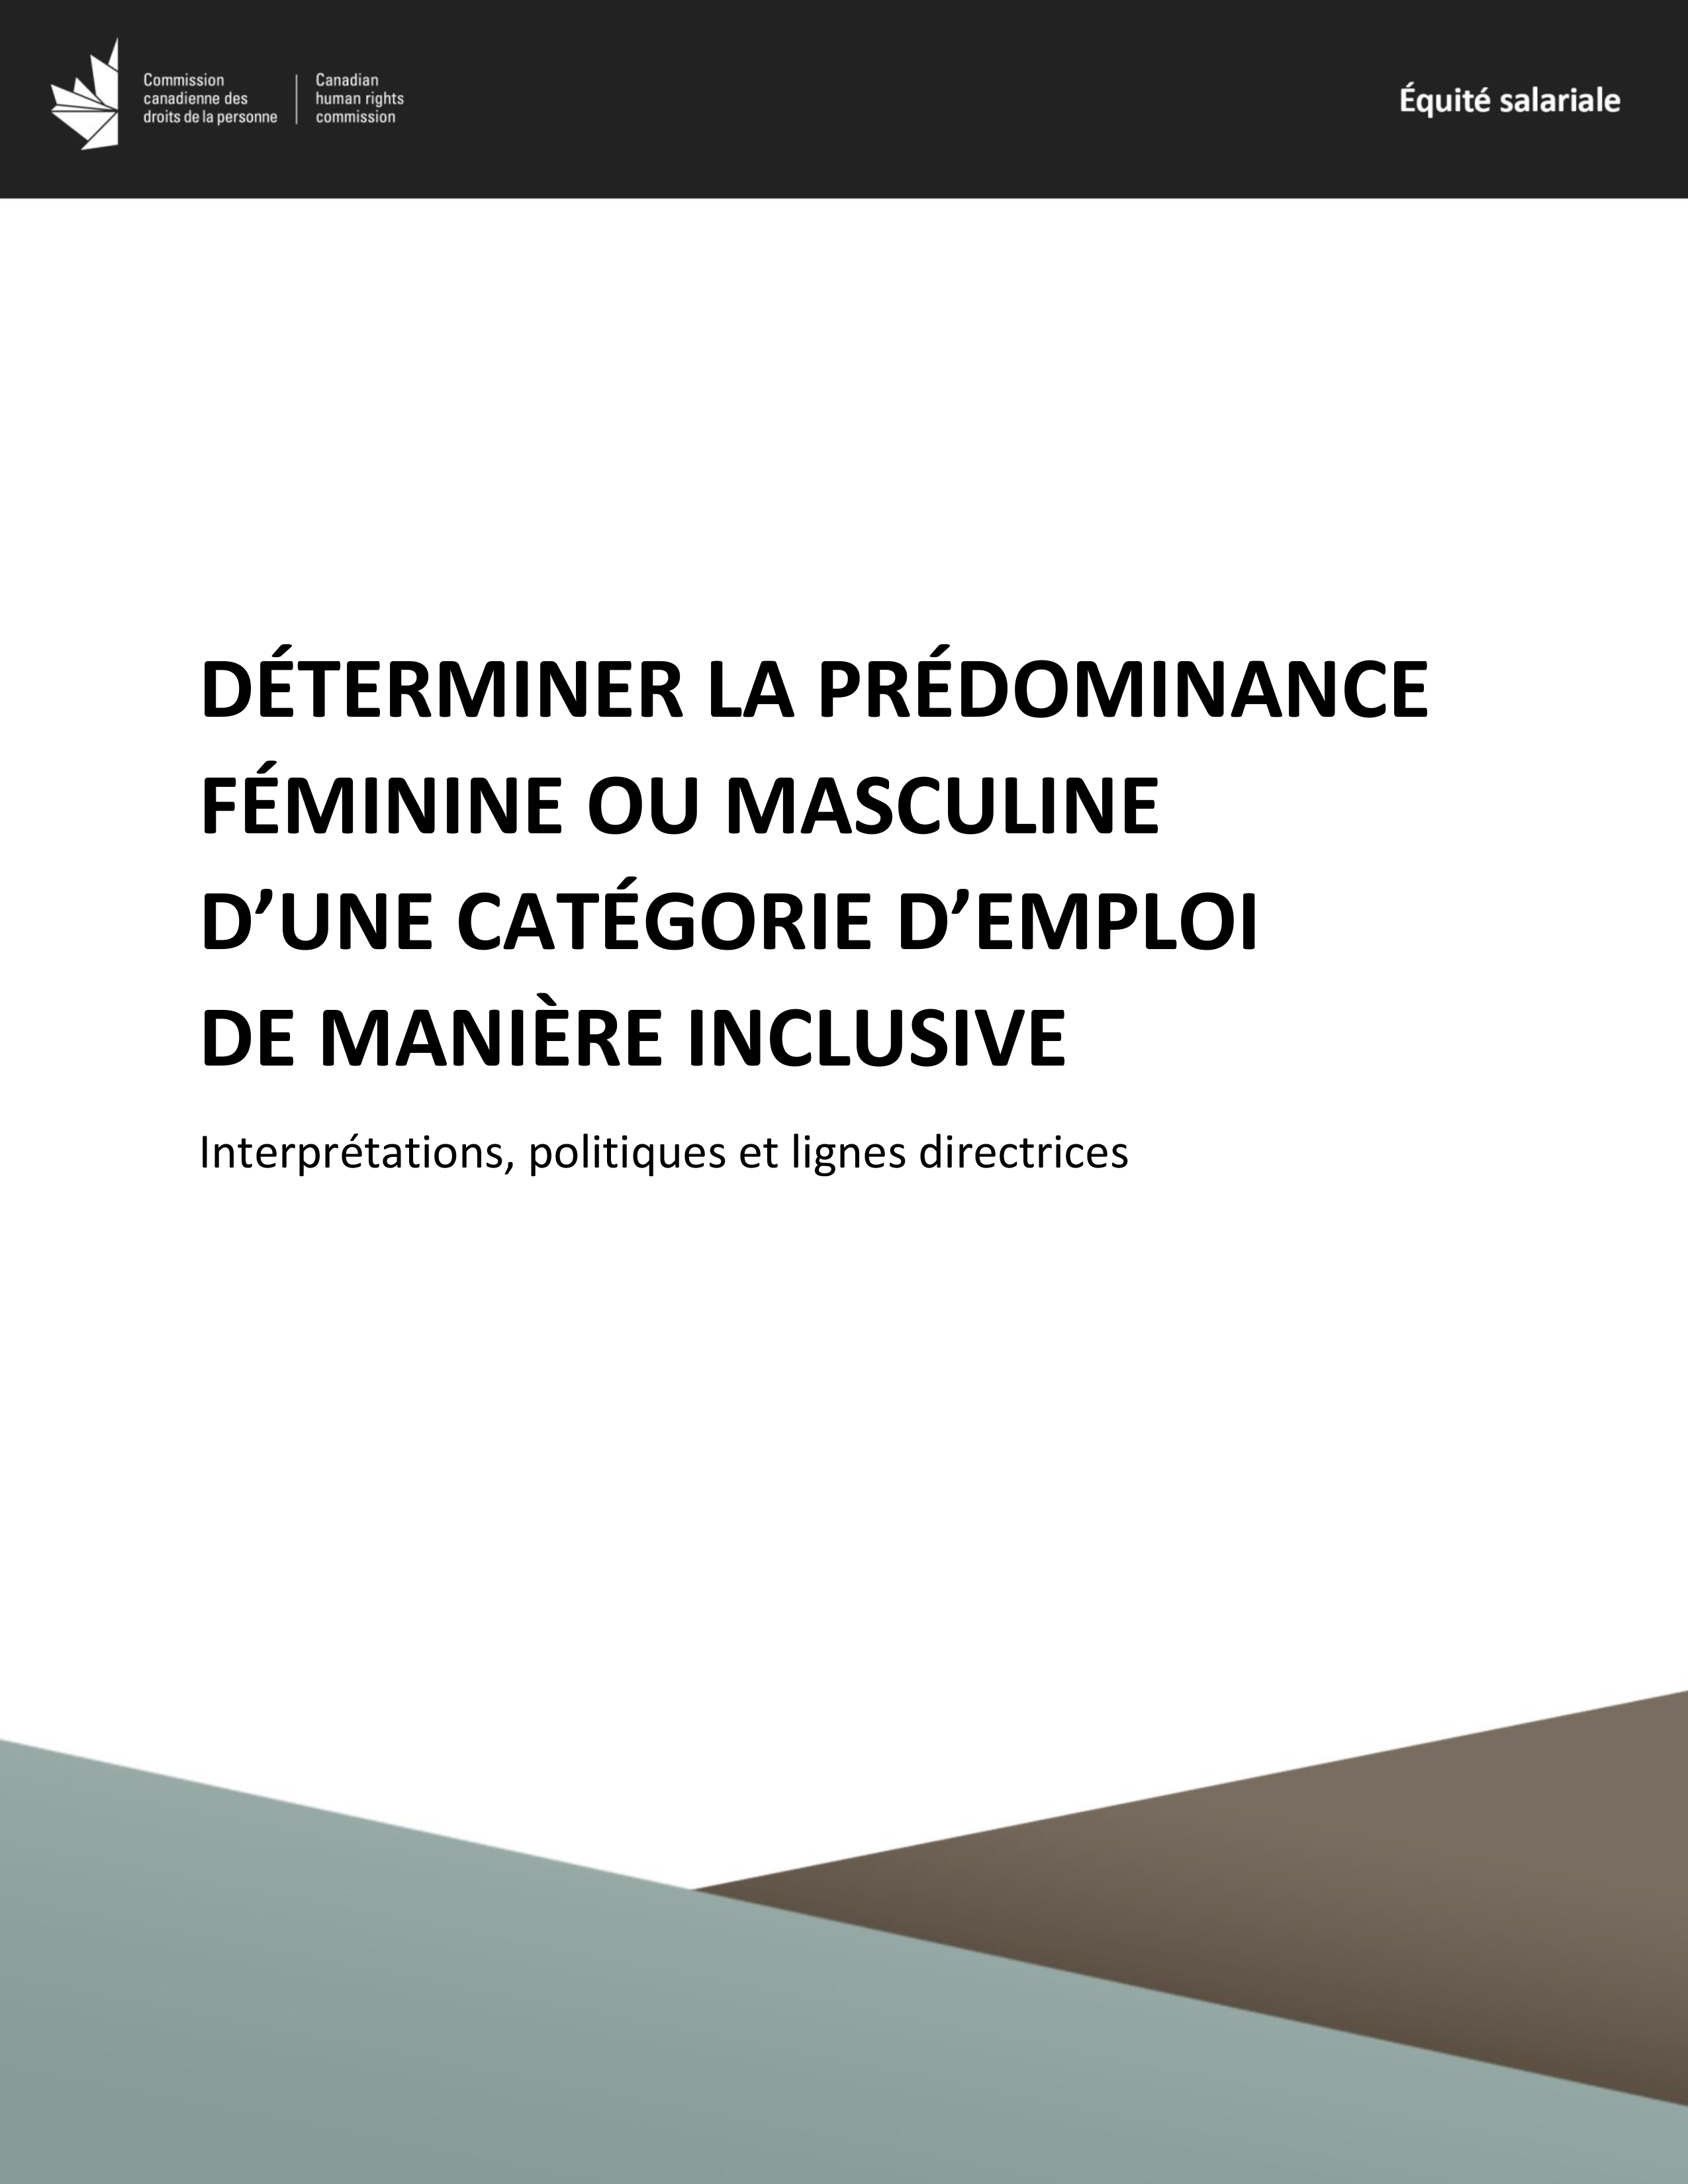 Déterminer la prédominance féminine ou masculine d’une catégorie d’emploi de manière inclusive - Interprétations, politiques et lignes directrices